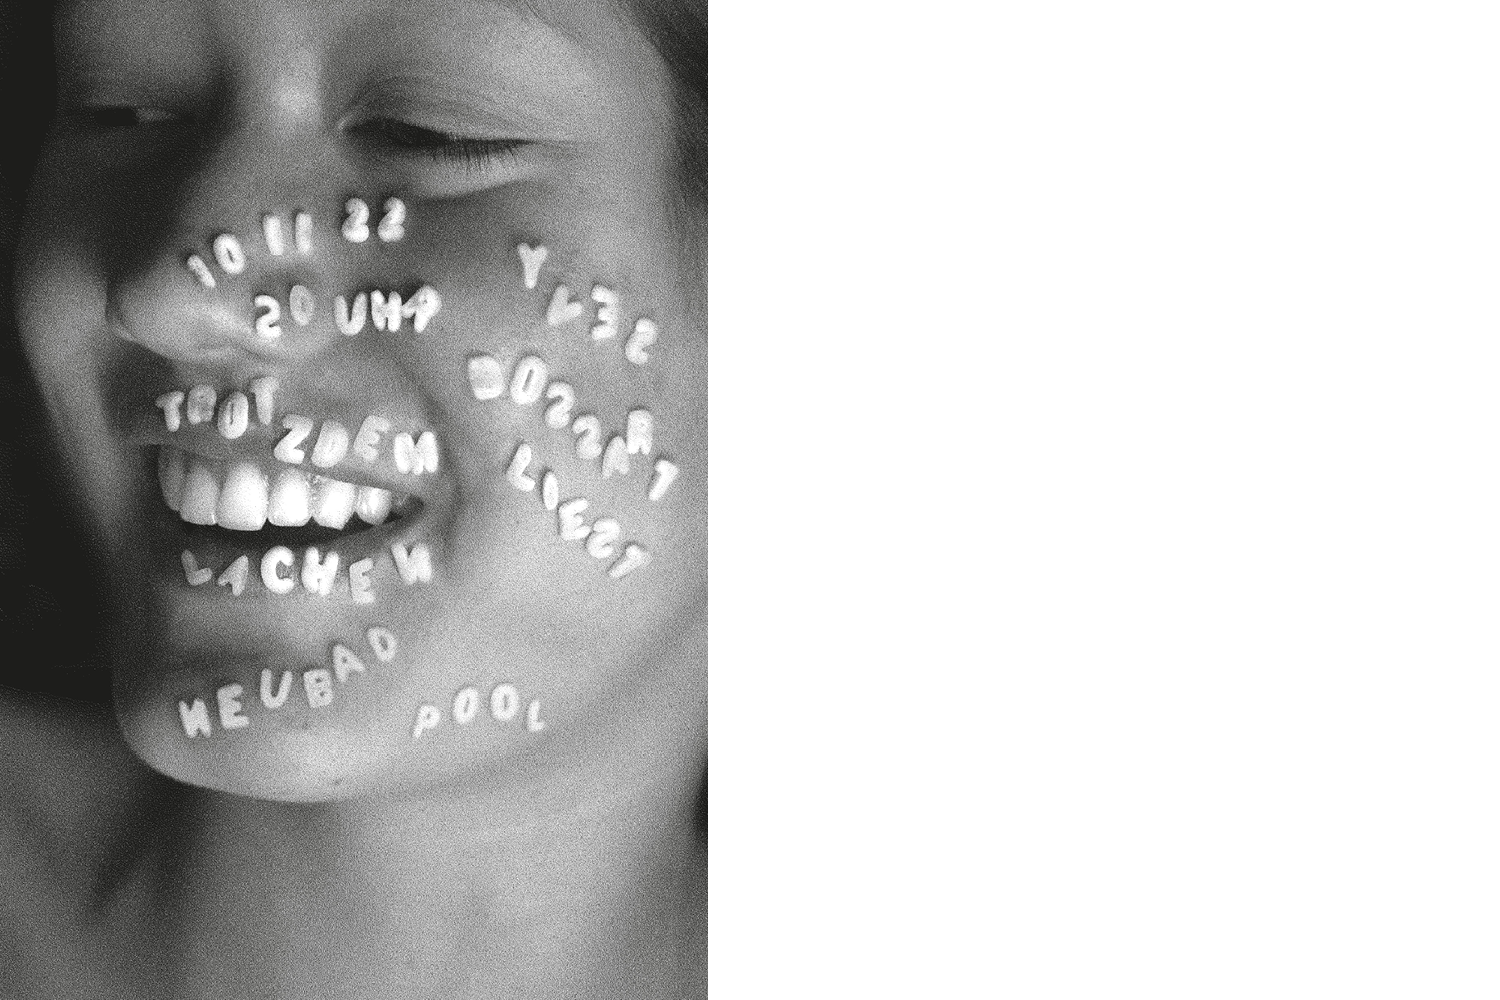 Das Veranstaltungsplakat zur Lesung von Yves Bossart zeigt eine lachende Frau mit Suppenbuchstaben auf ihrem Gesicht